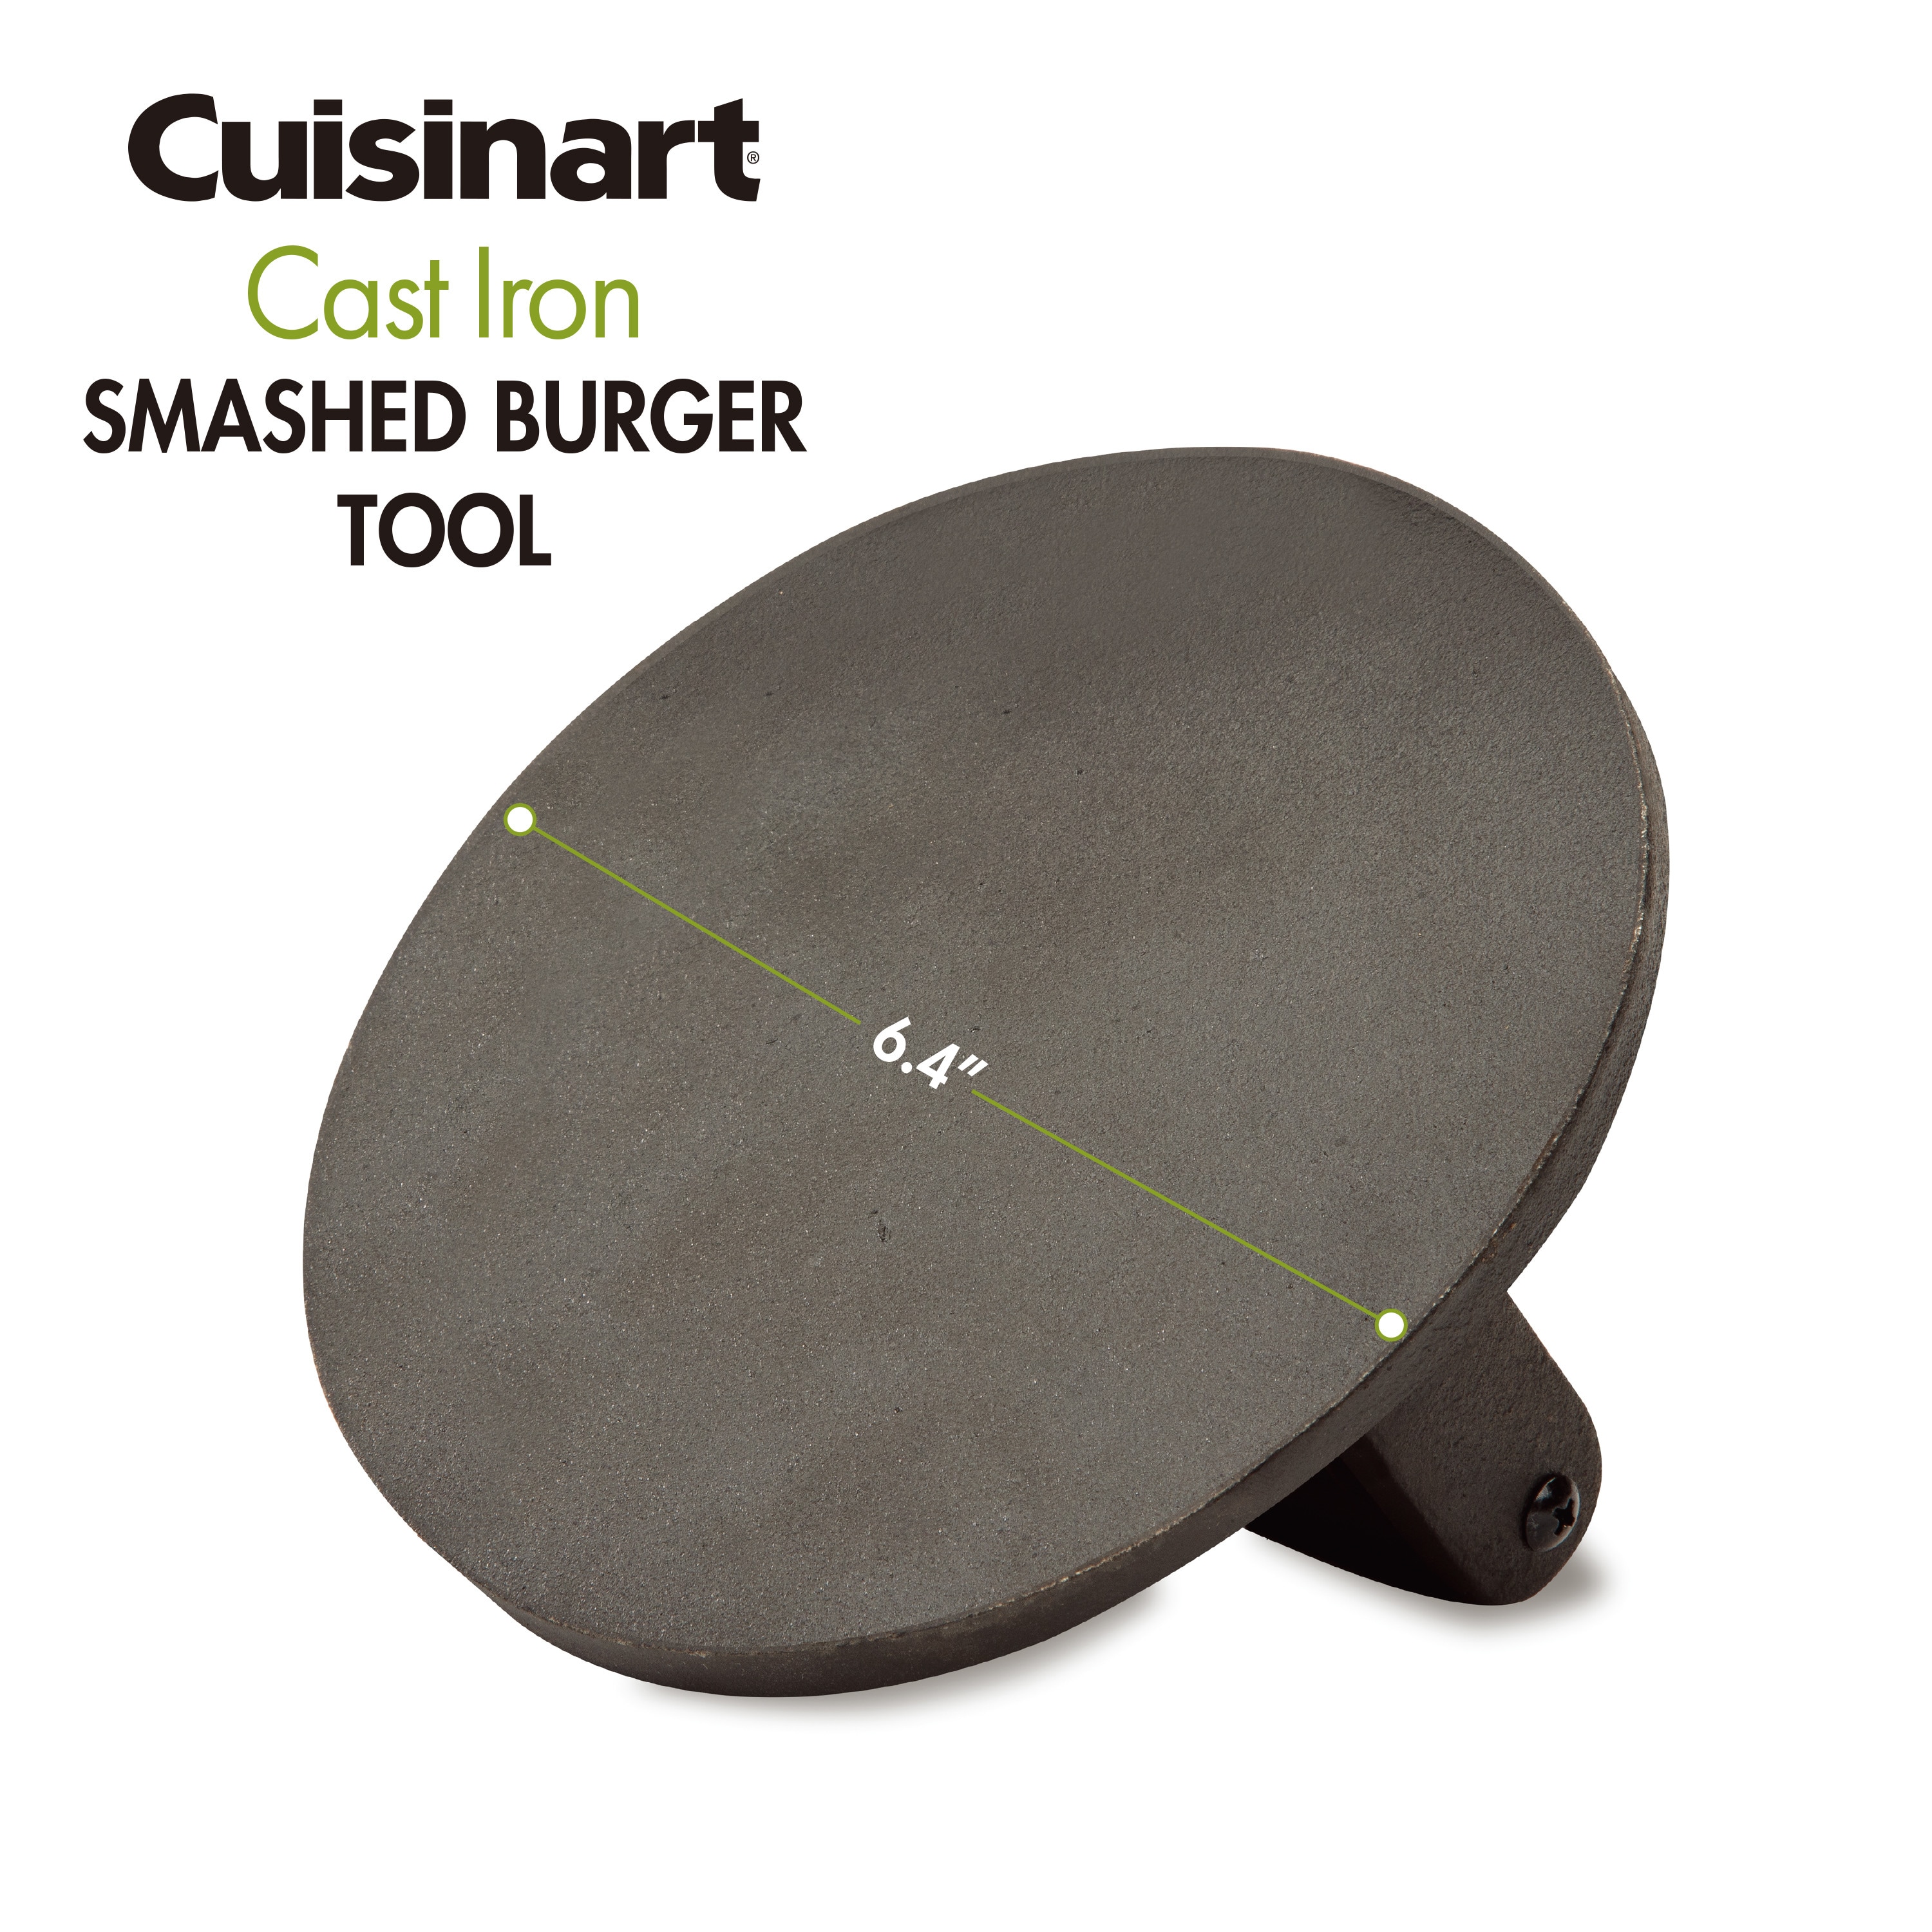 Cuisinart Smashed Burger Kit